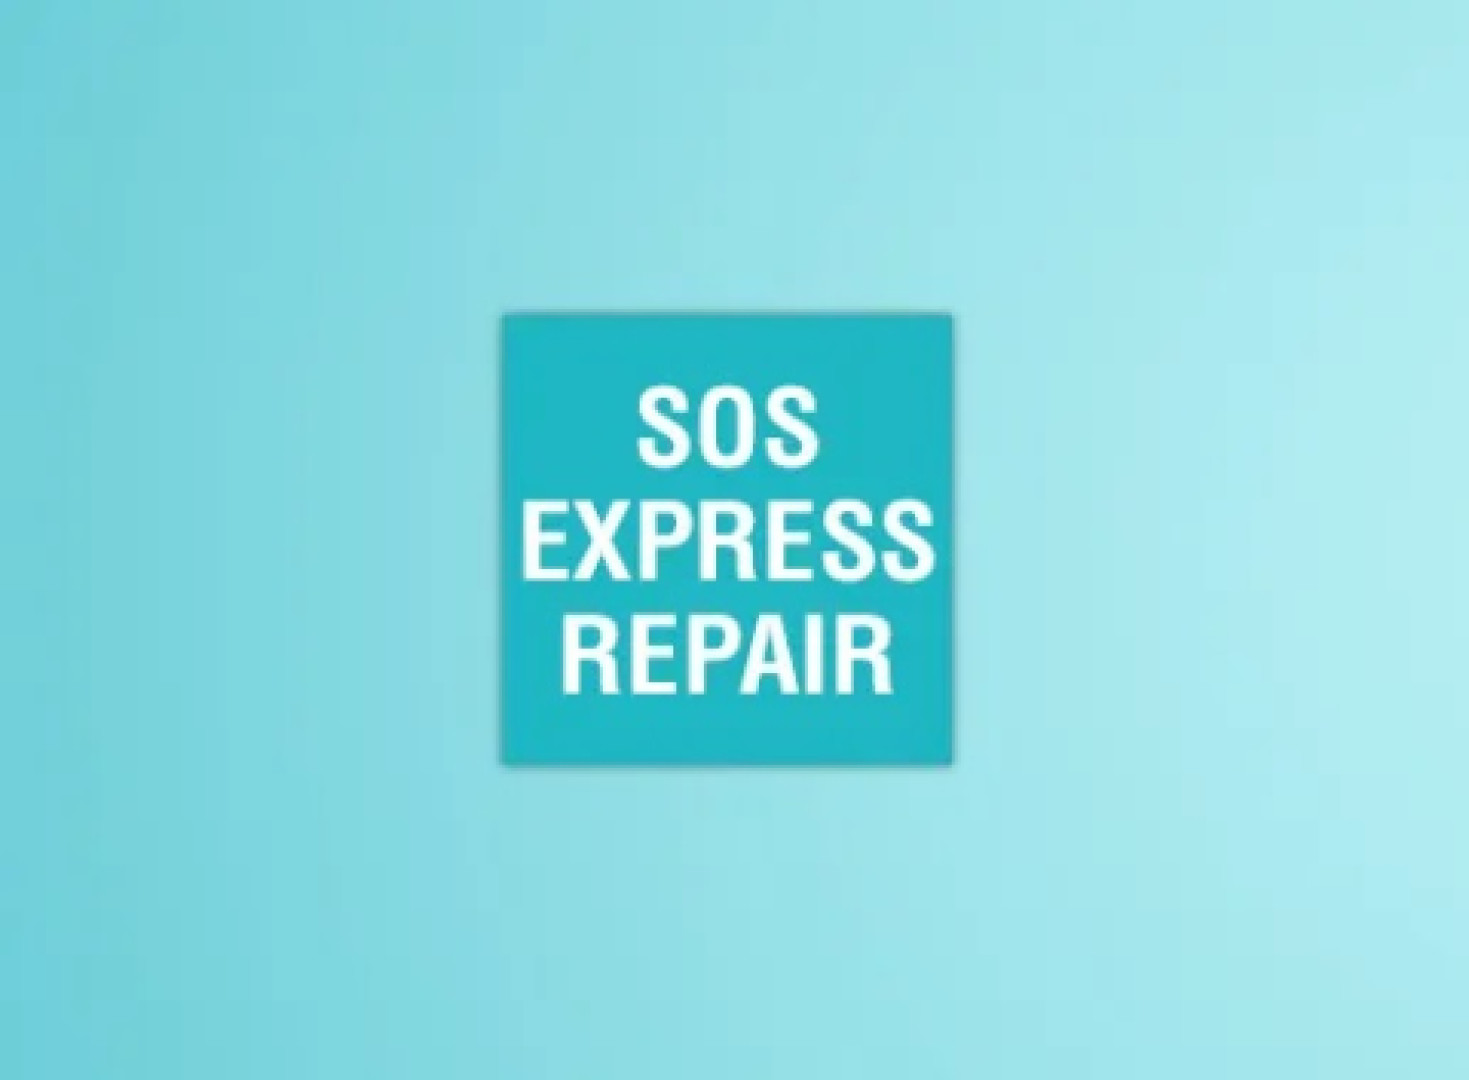 Envie SOS Express Repair